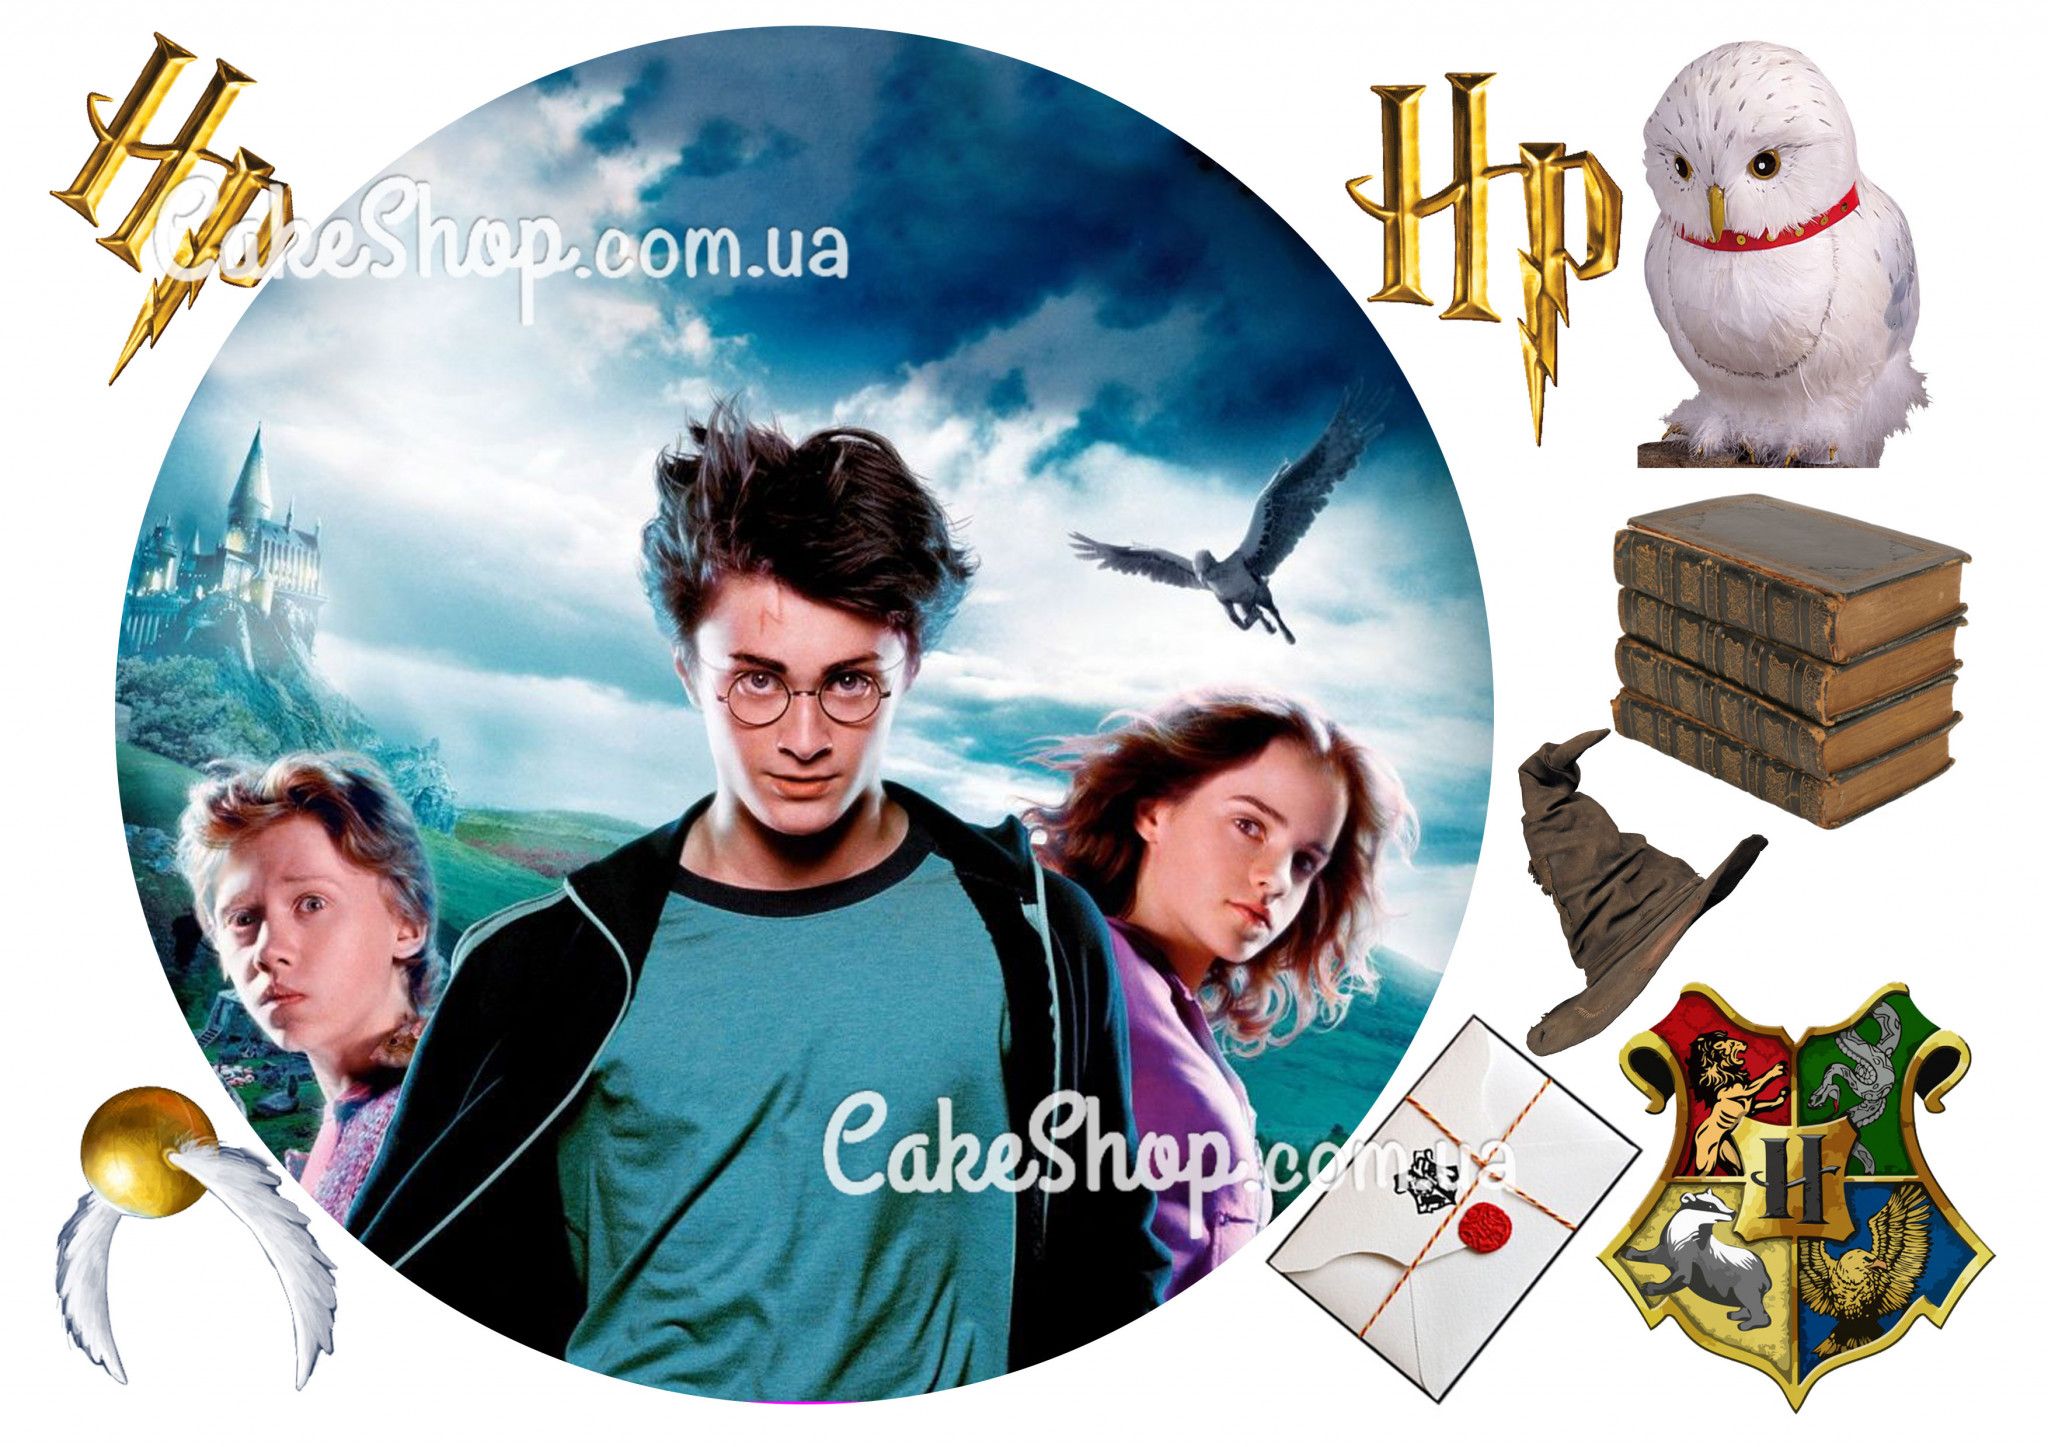 ⋗ Сахарная картинка Гарри Поттер 2 купить в Украине ➛ CakeShop.com.ua, фото